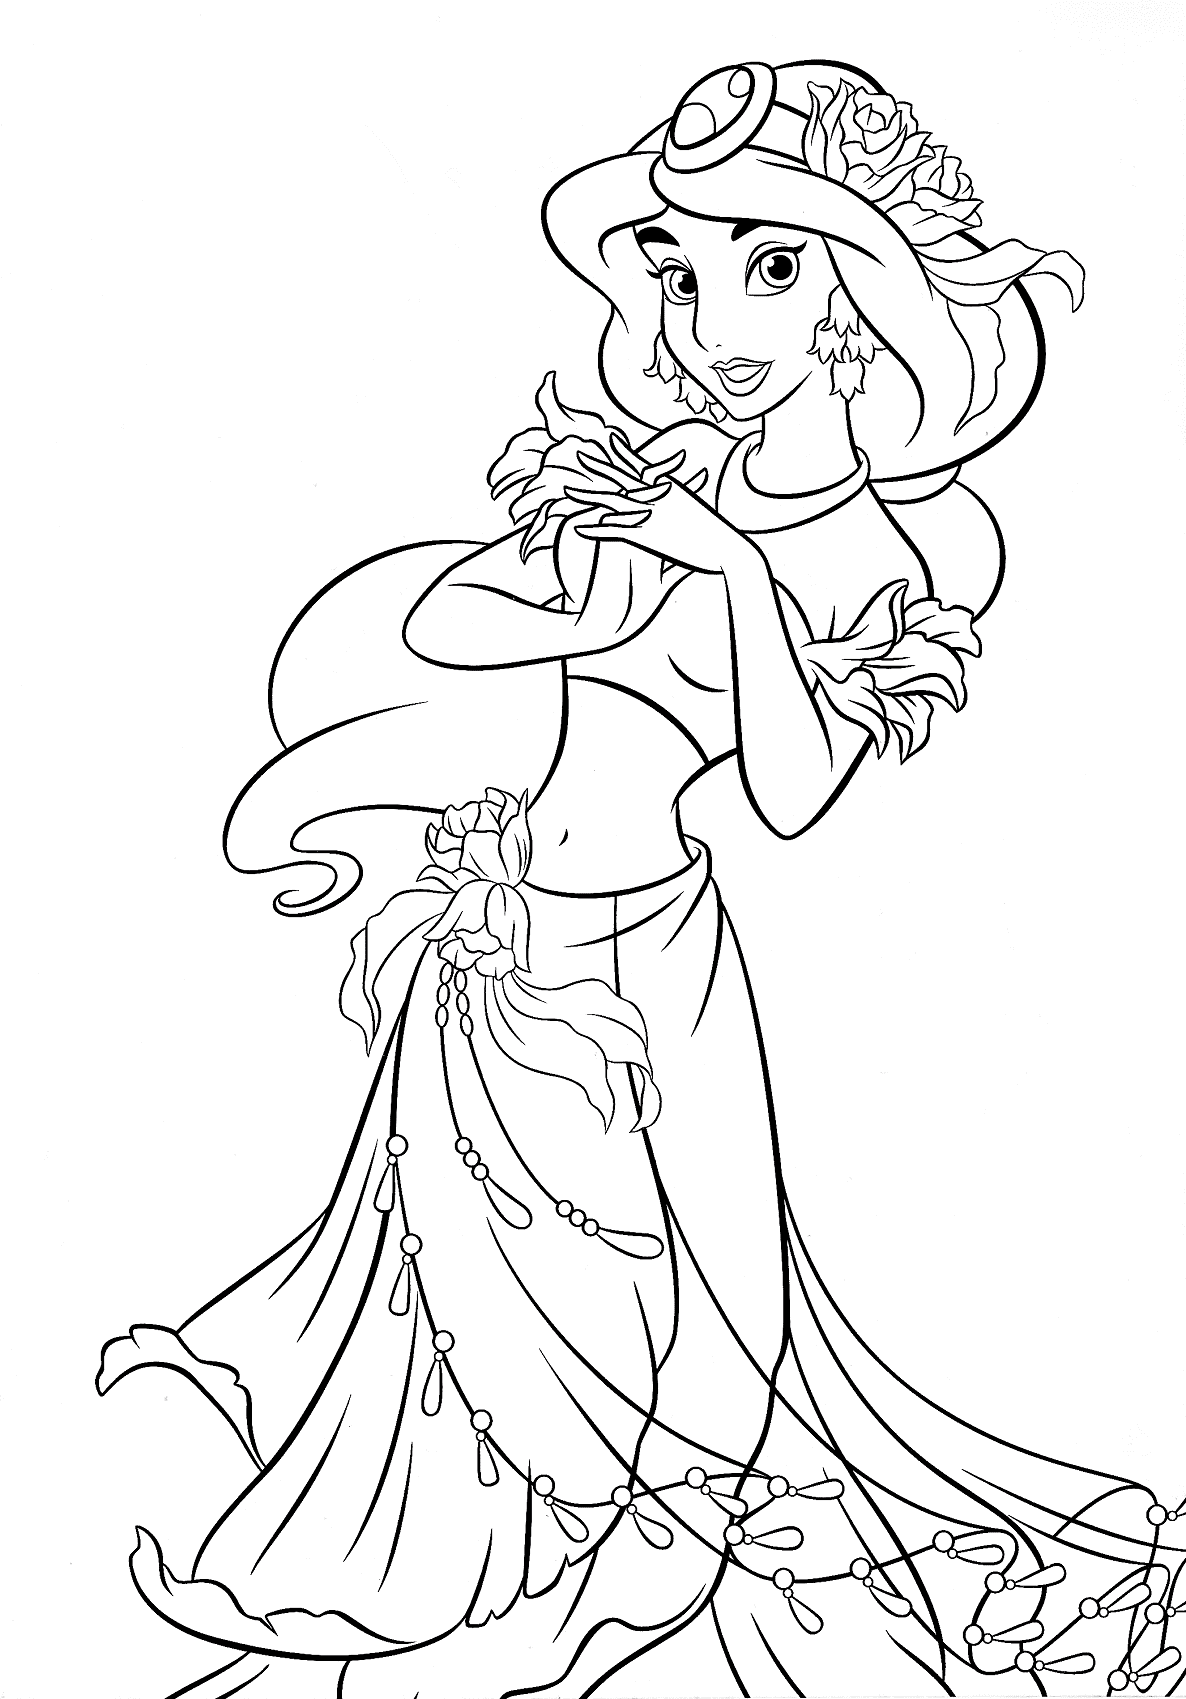 Desenho para colorir para imprimir da Princesa Jasmine da Disney